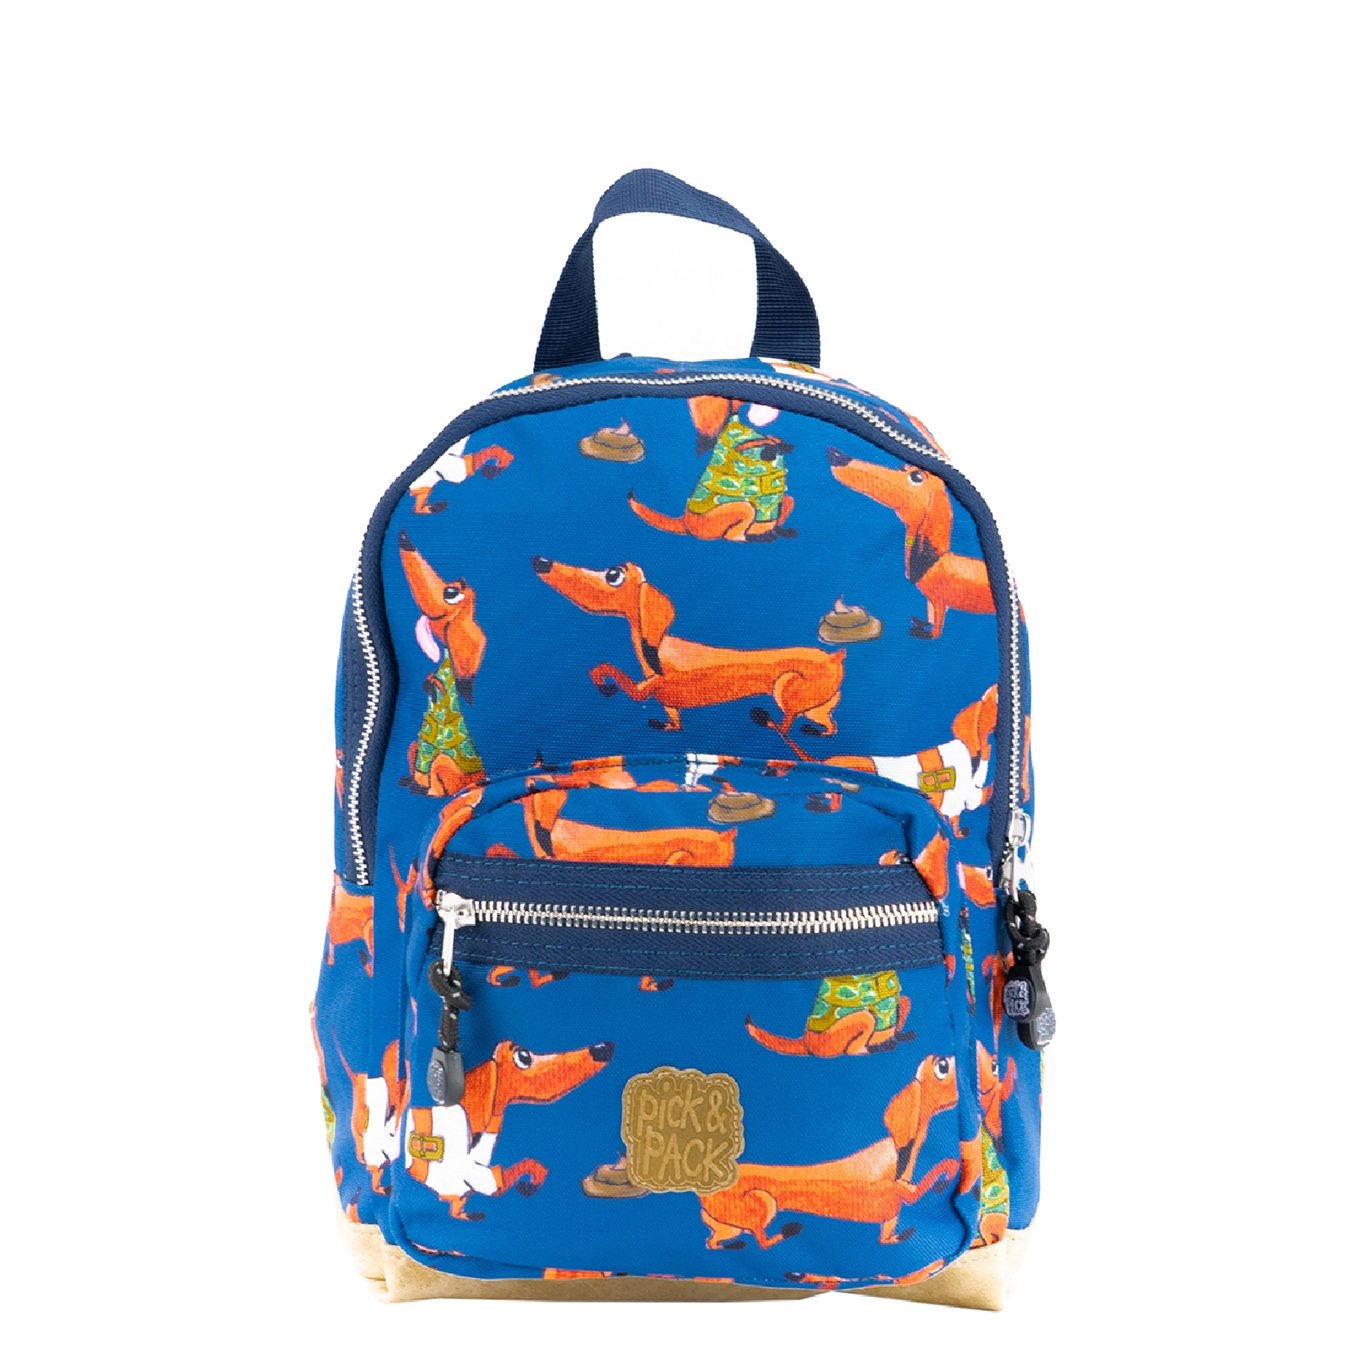 Pick & Pack Wiener Backpack S denim blue